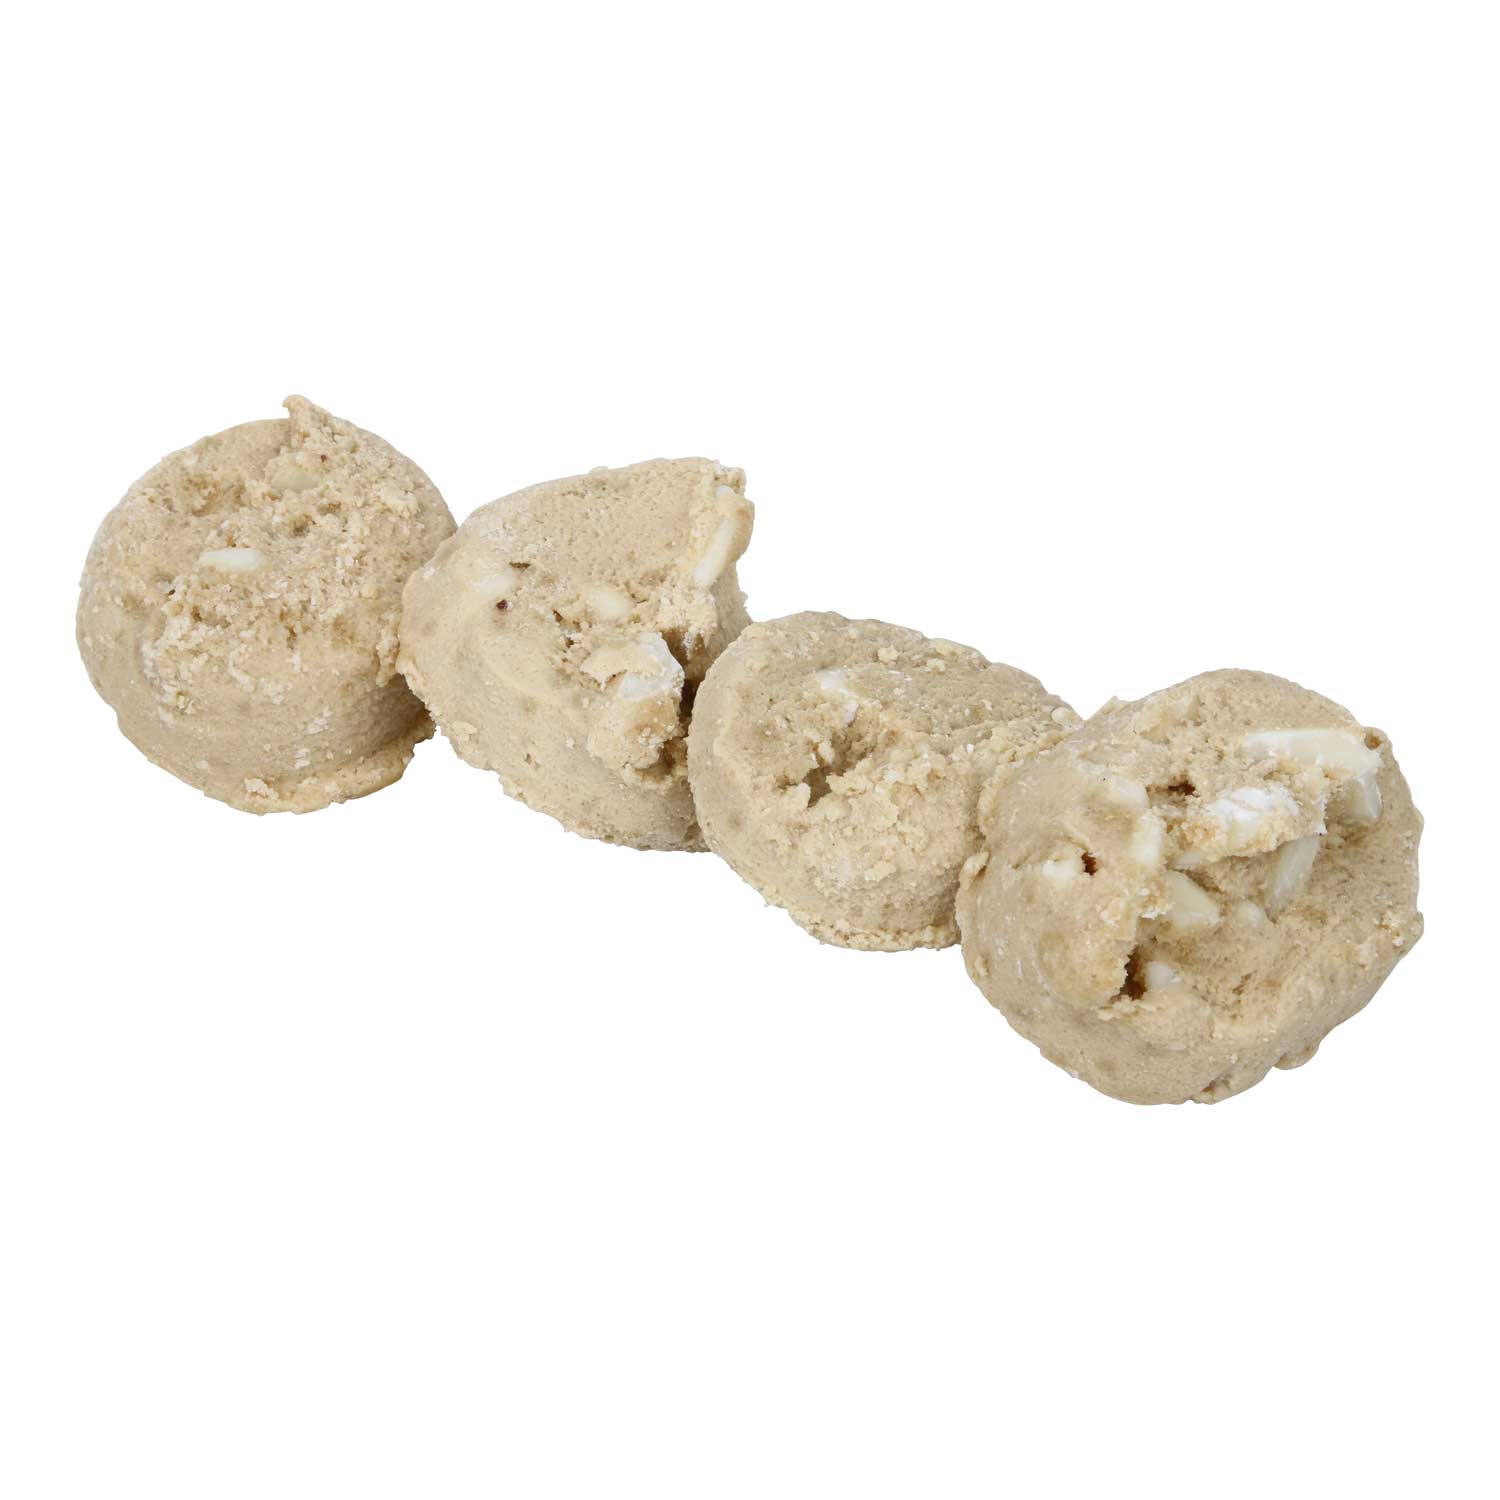 Otis Spunkmeyer Gourmet White Chocolate Macadamia Nut Bagged Cookie Dough, 5 Pound -- 4 per case.